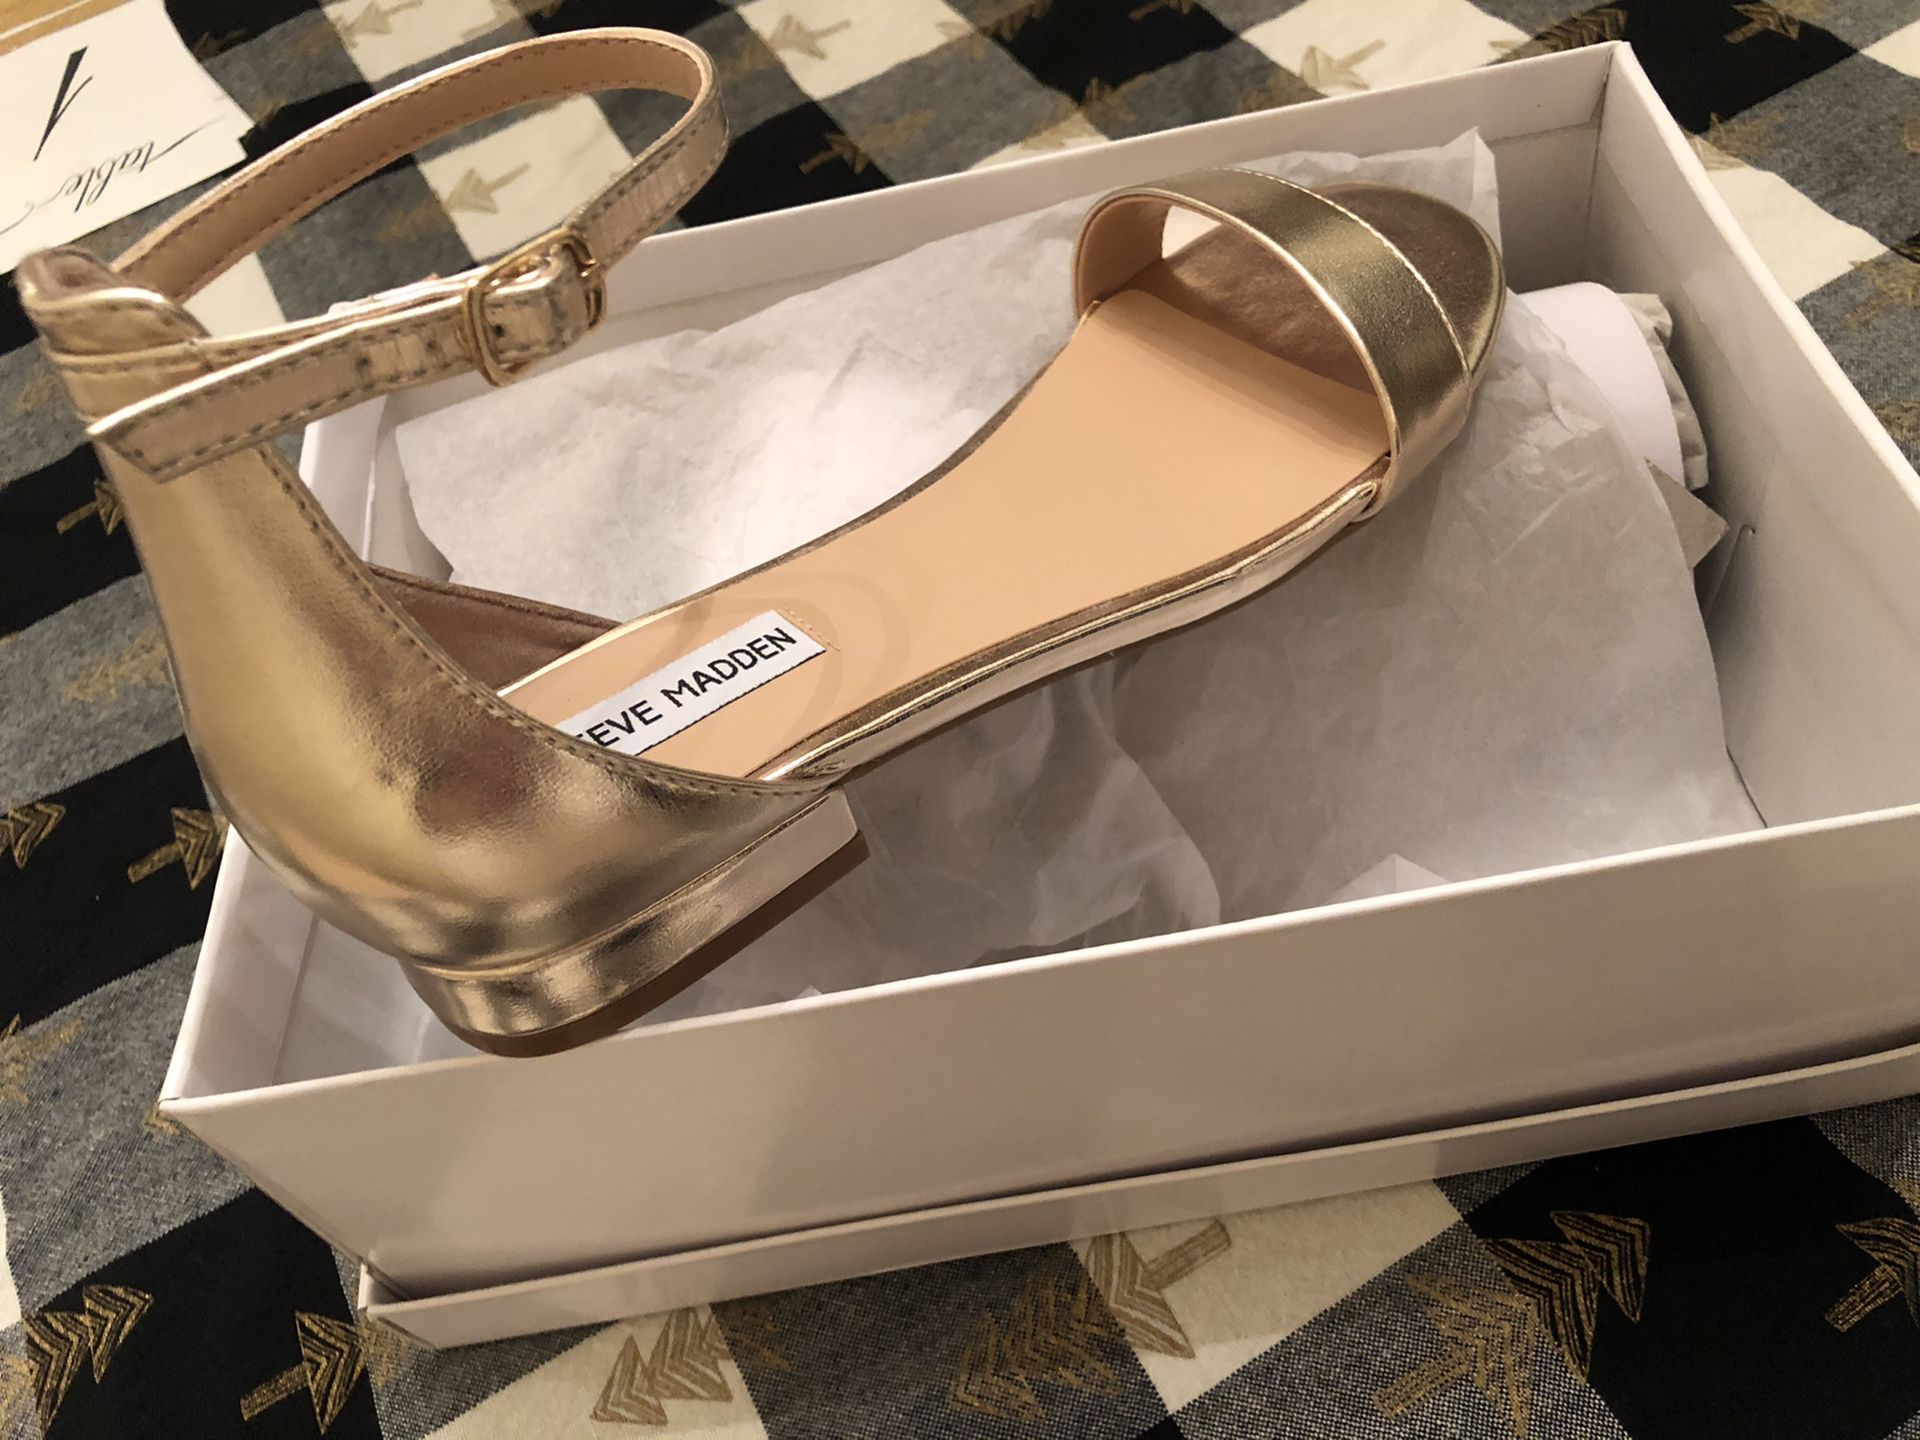 Steve Madden dress shoes- Gold size 9 medium width